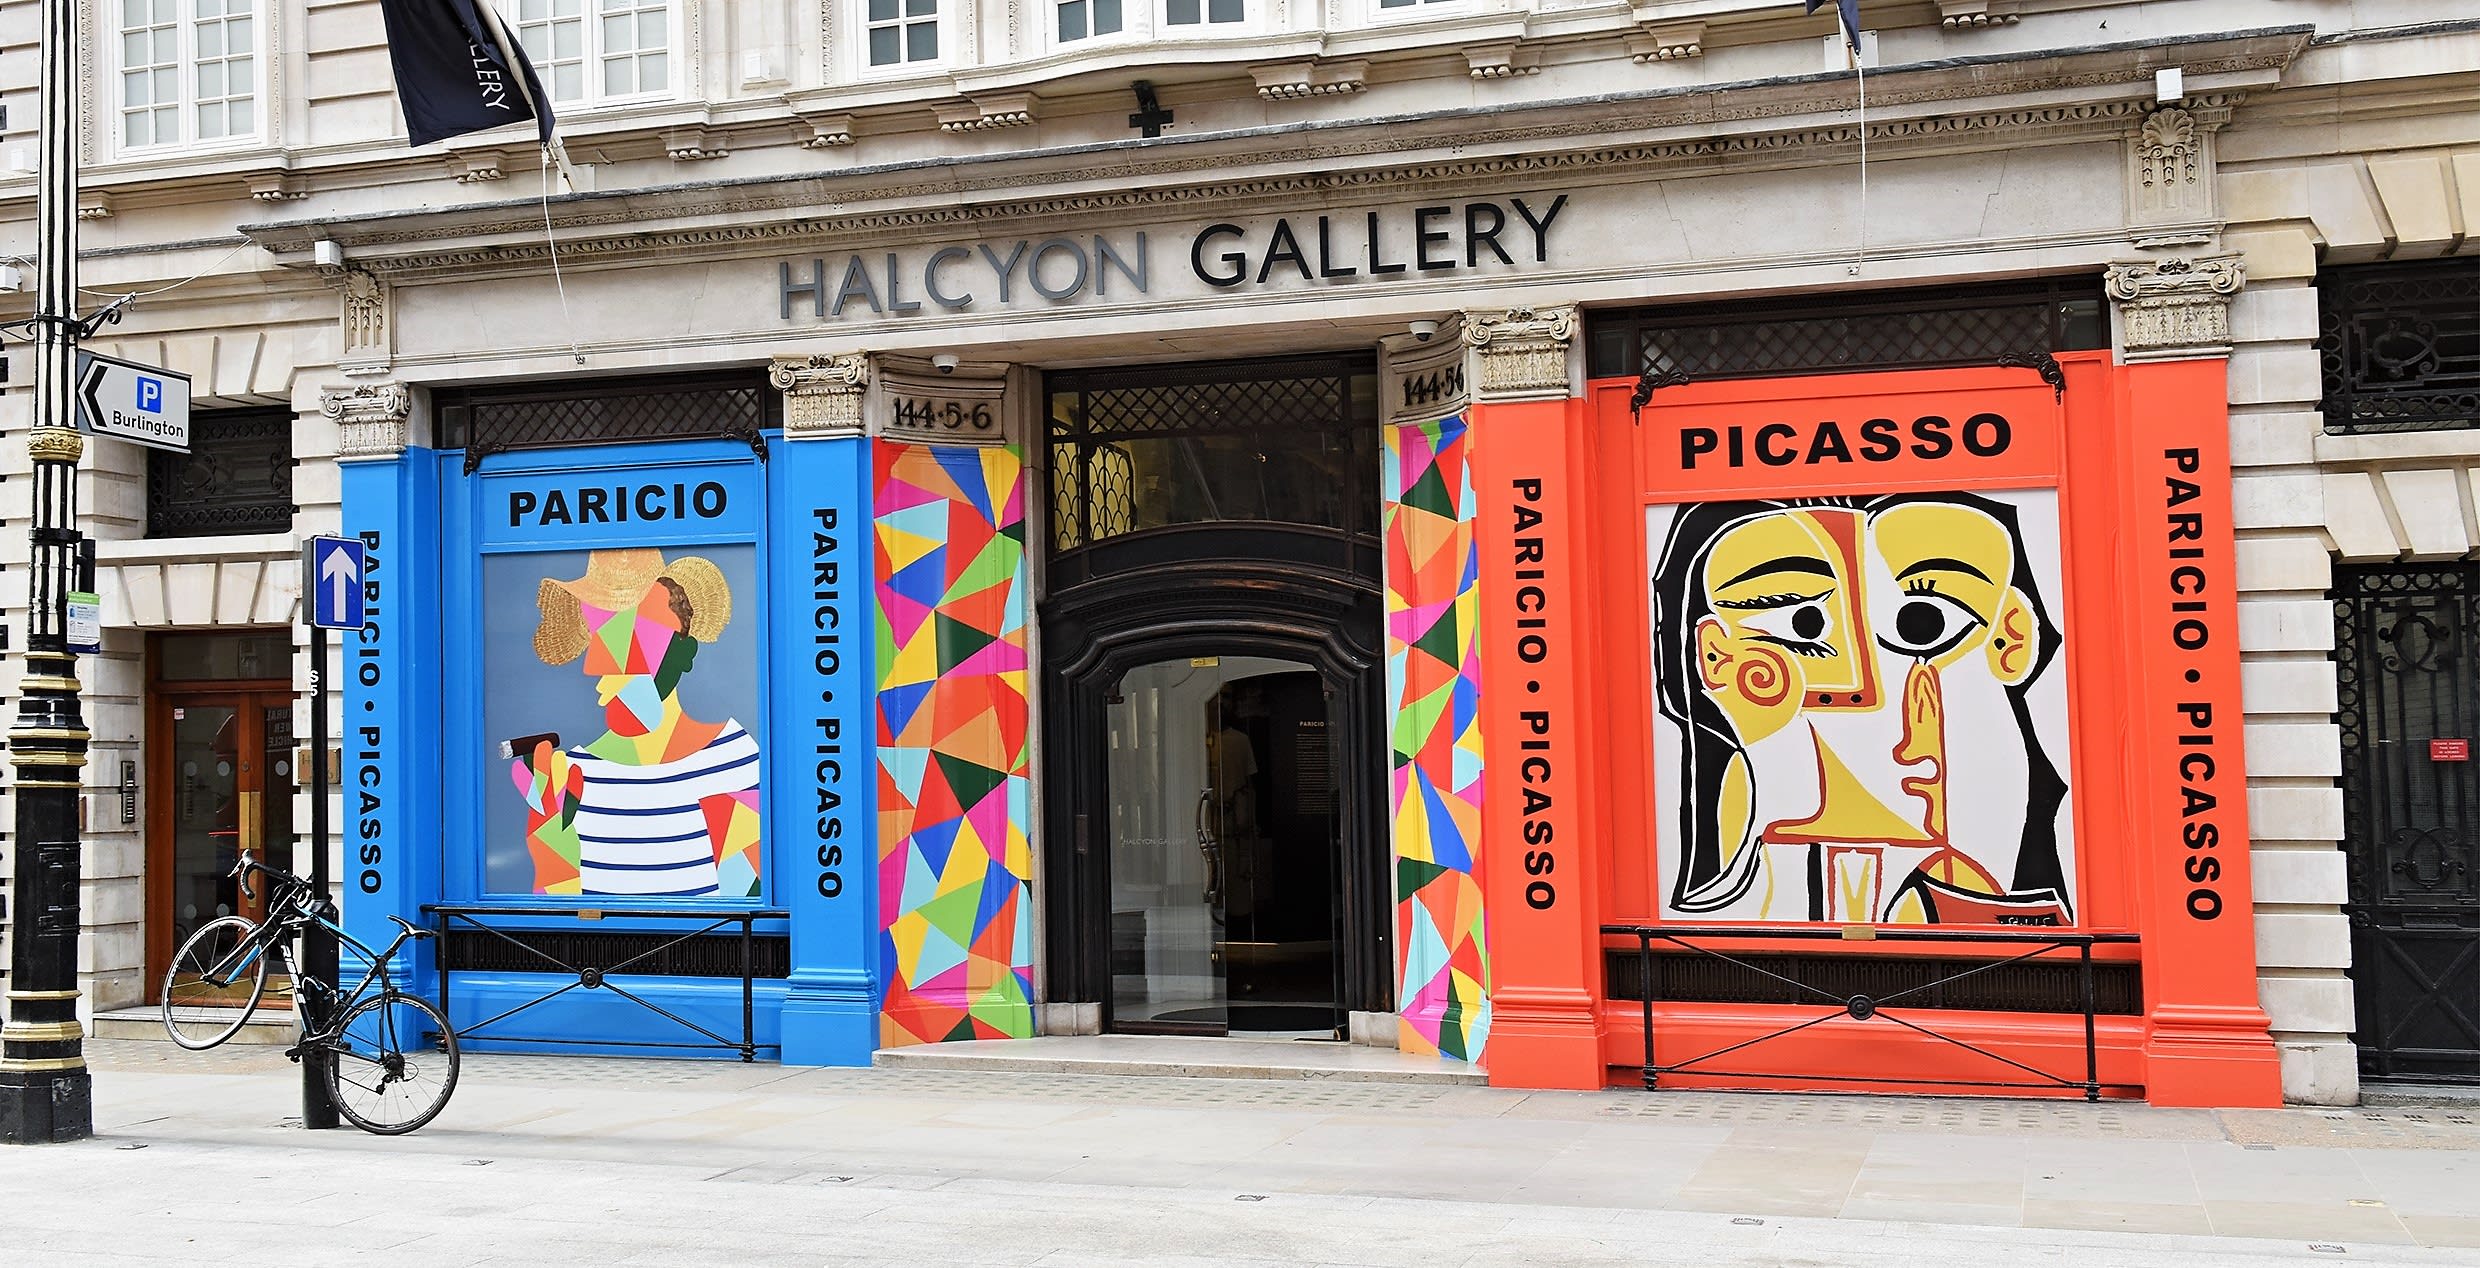 Paricio • Picasso | Halcyon Gallery